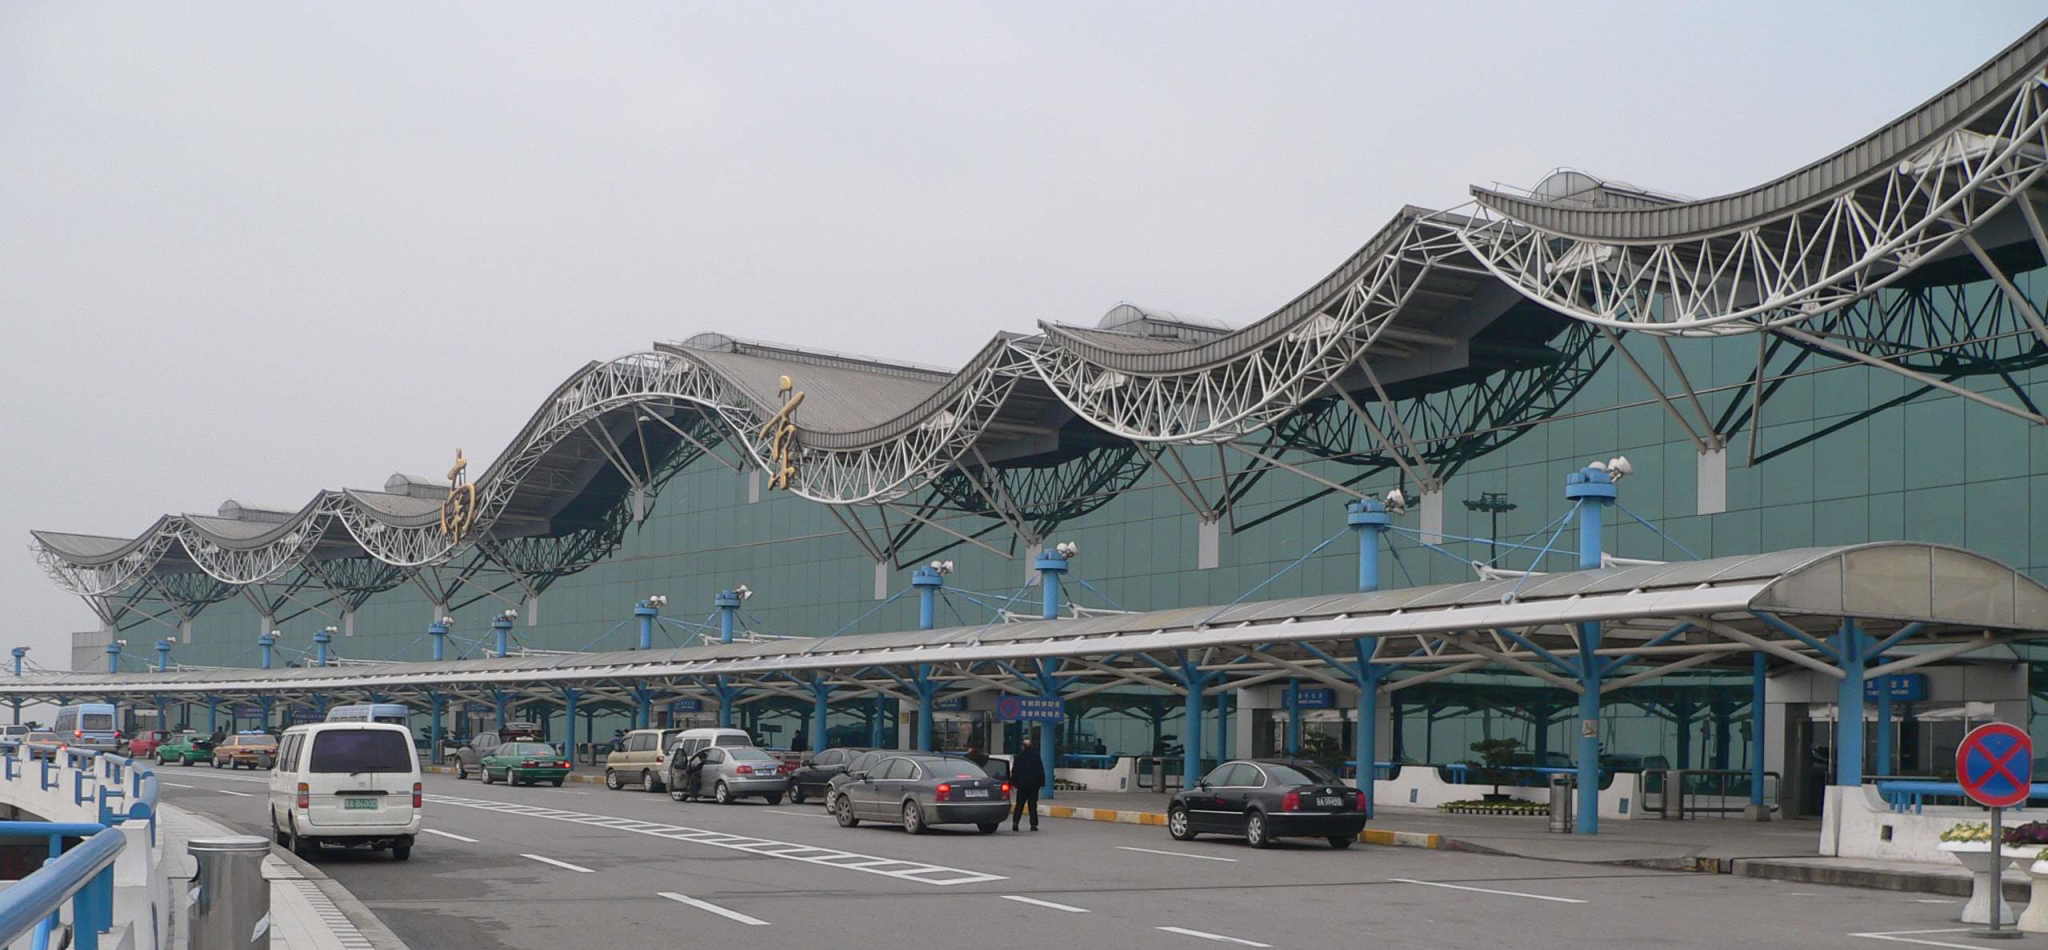 Nanjing Airport